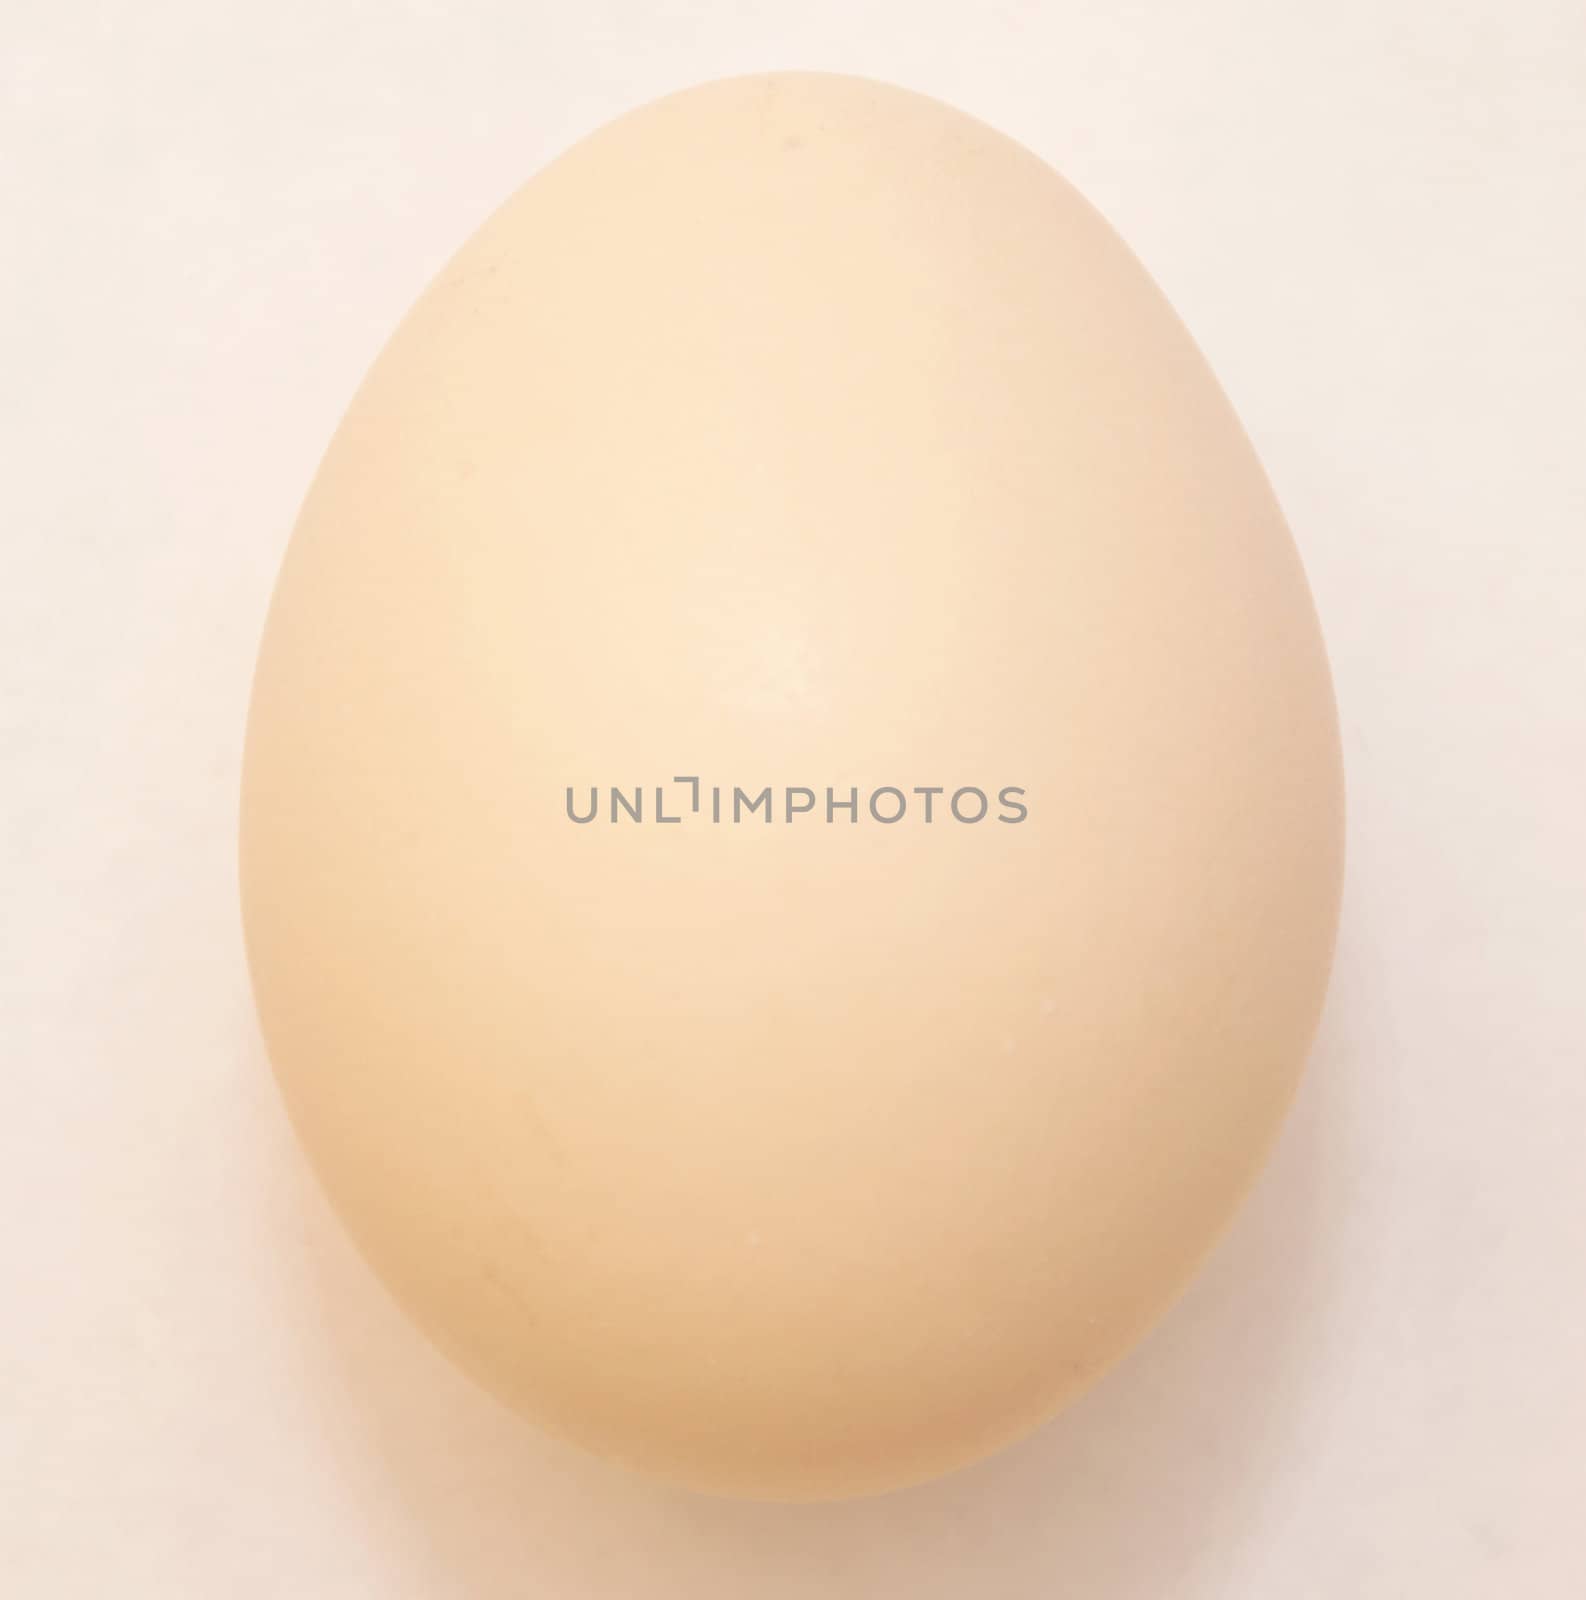 Egg of animal isolated on white background